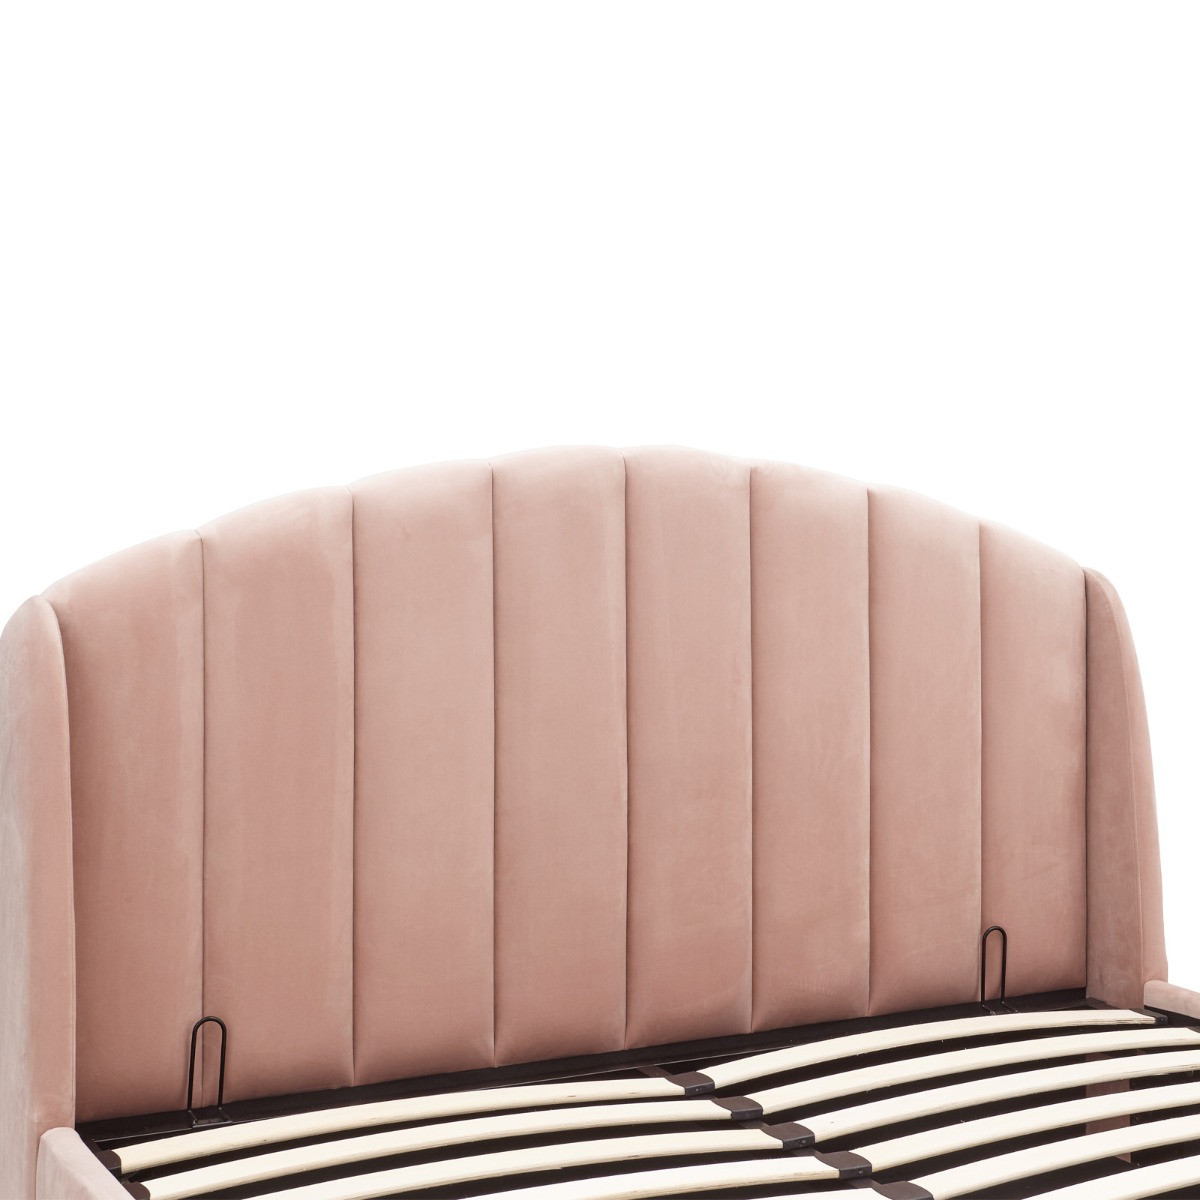 Pettine End Lift Ottoman Storage Bed - Blush Pink>